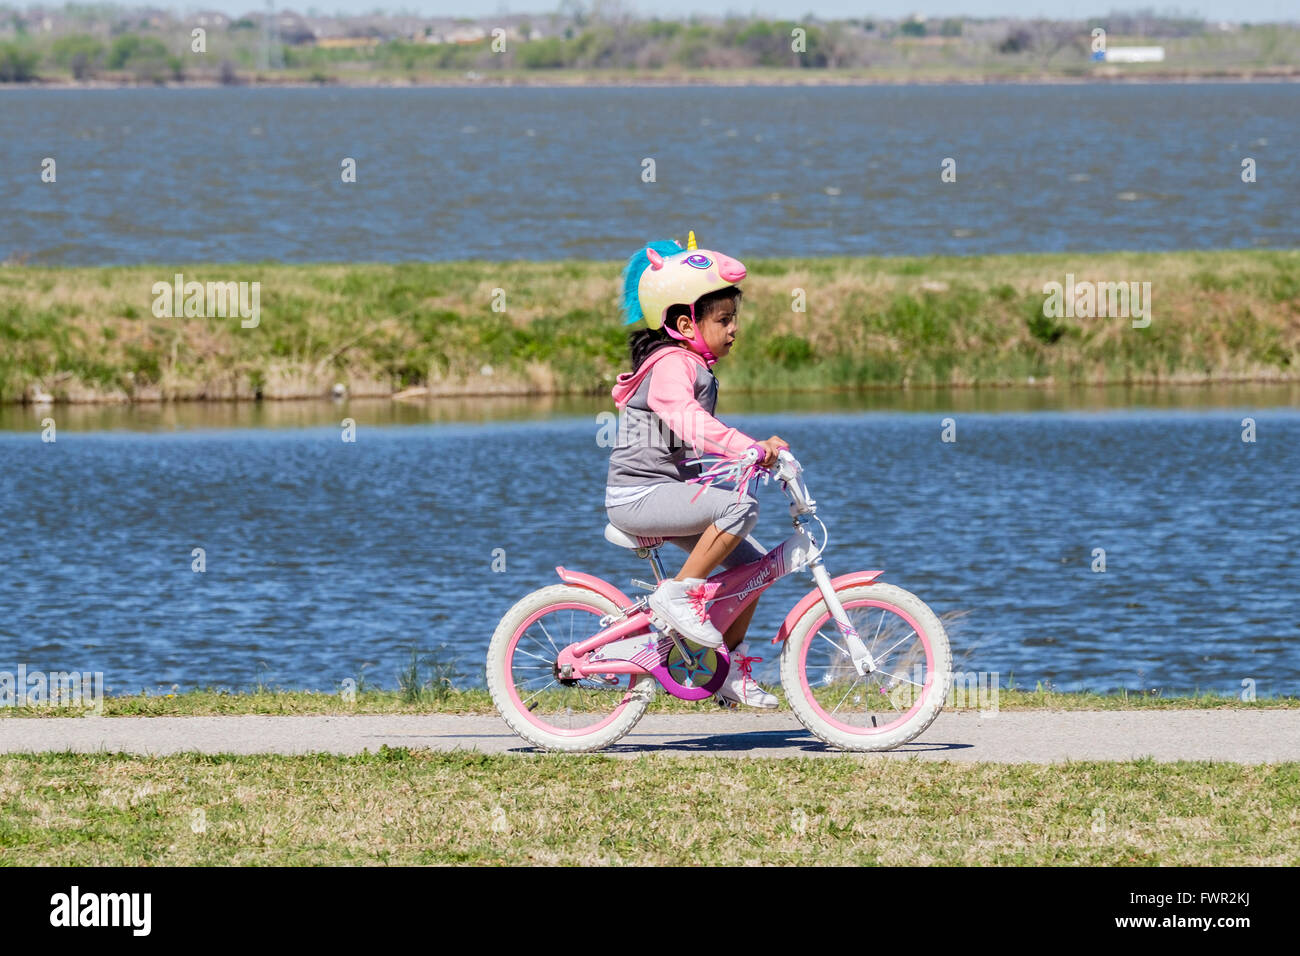 Una giovane ragazza ispanica con un liocorno helmit cavalca la sua bicicletta su percorsi a Overholser lago, Oklahoma City, Oklahoma, Stati Uniti d'America. Foto Stock